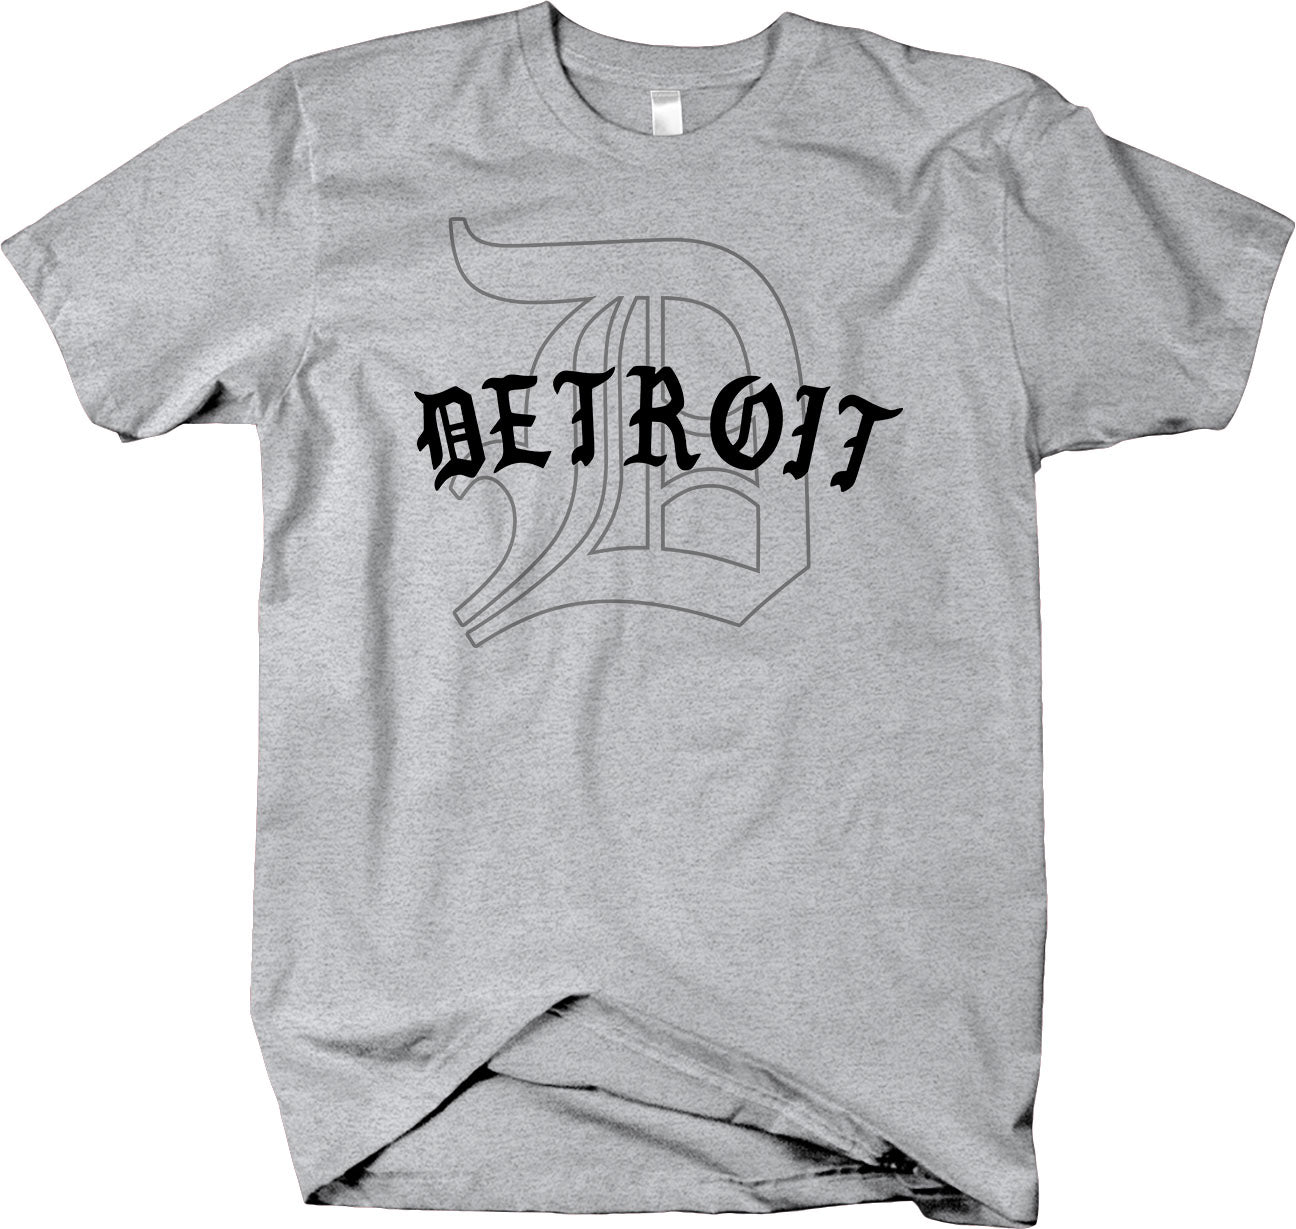 Classic "D" T-shirt  - Detroit Love Detroit Pride 313 - Larger Sizes